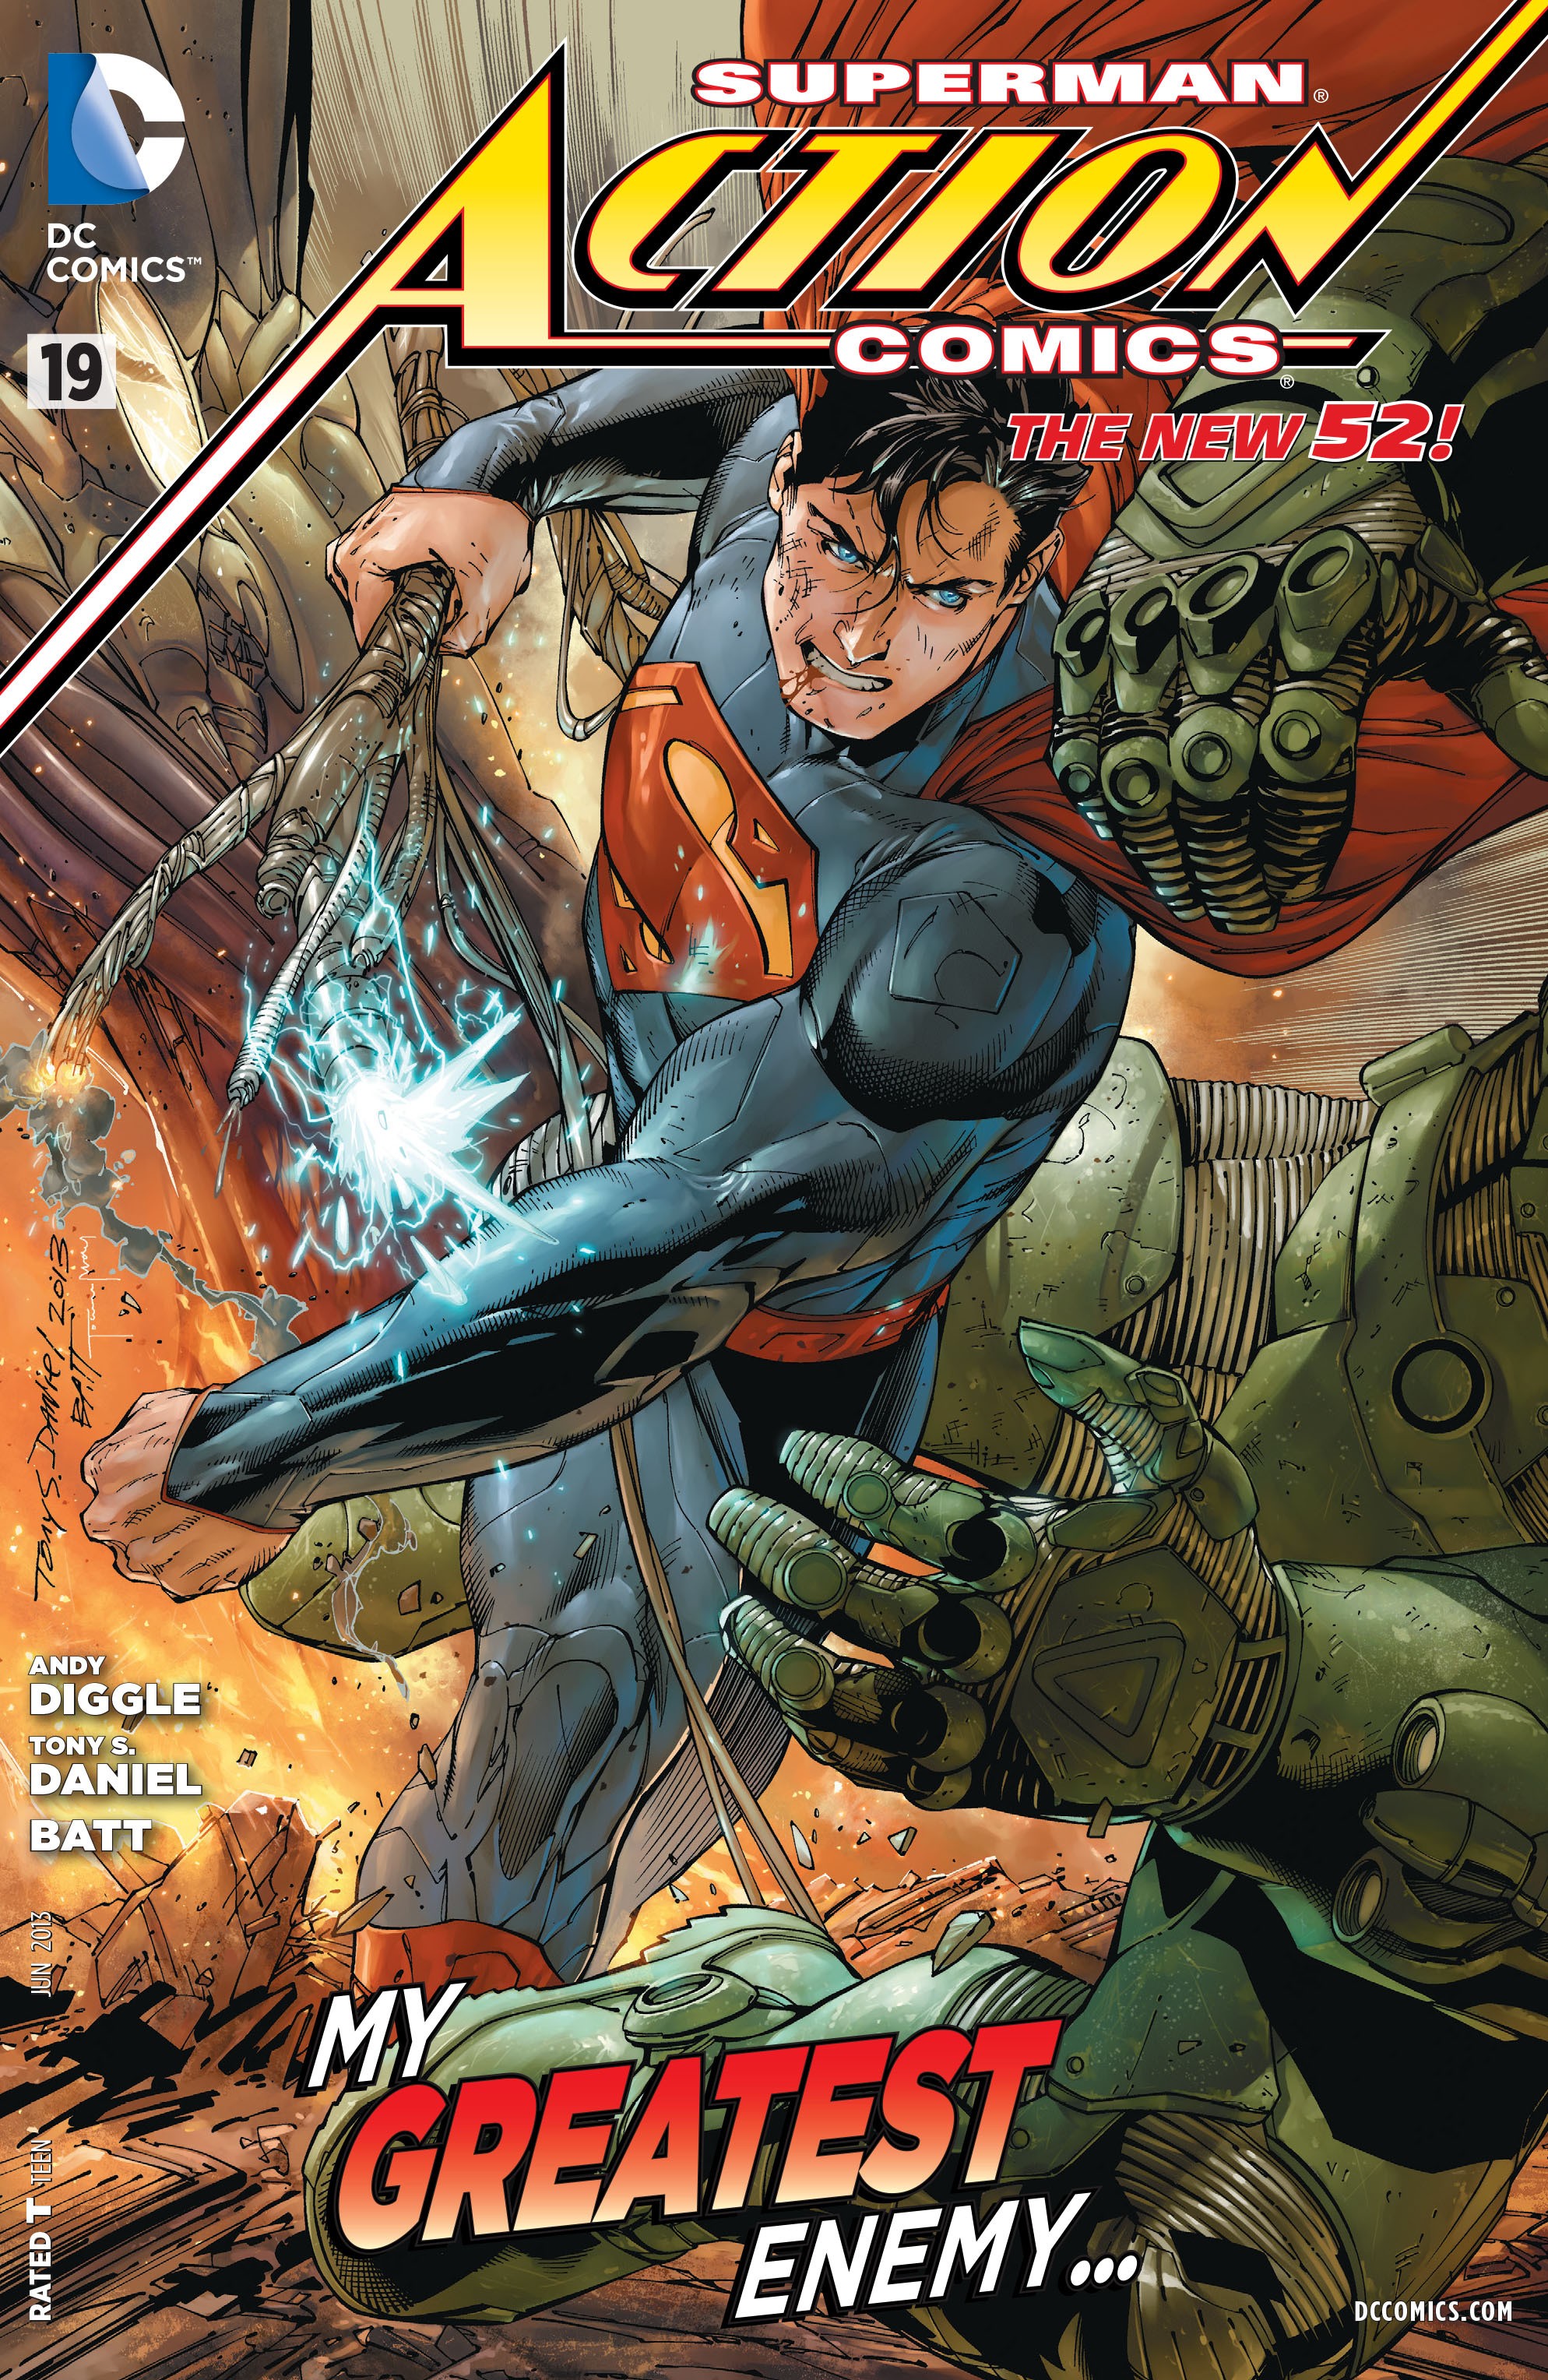 Action Comics Vol. 2 #19